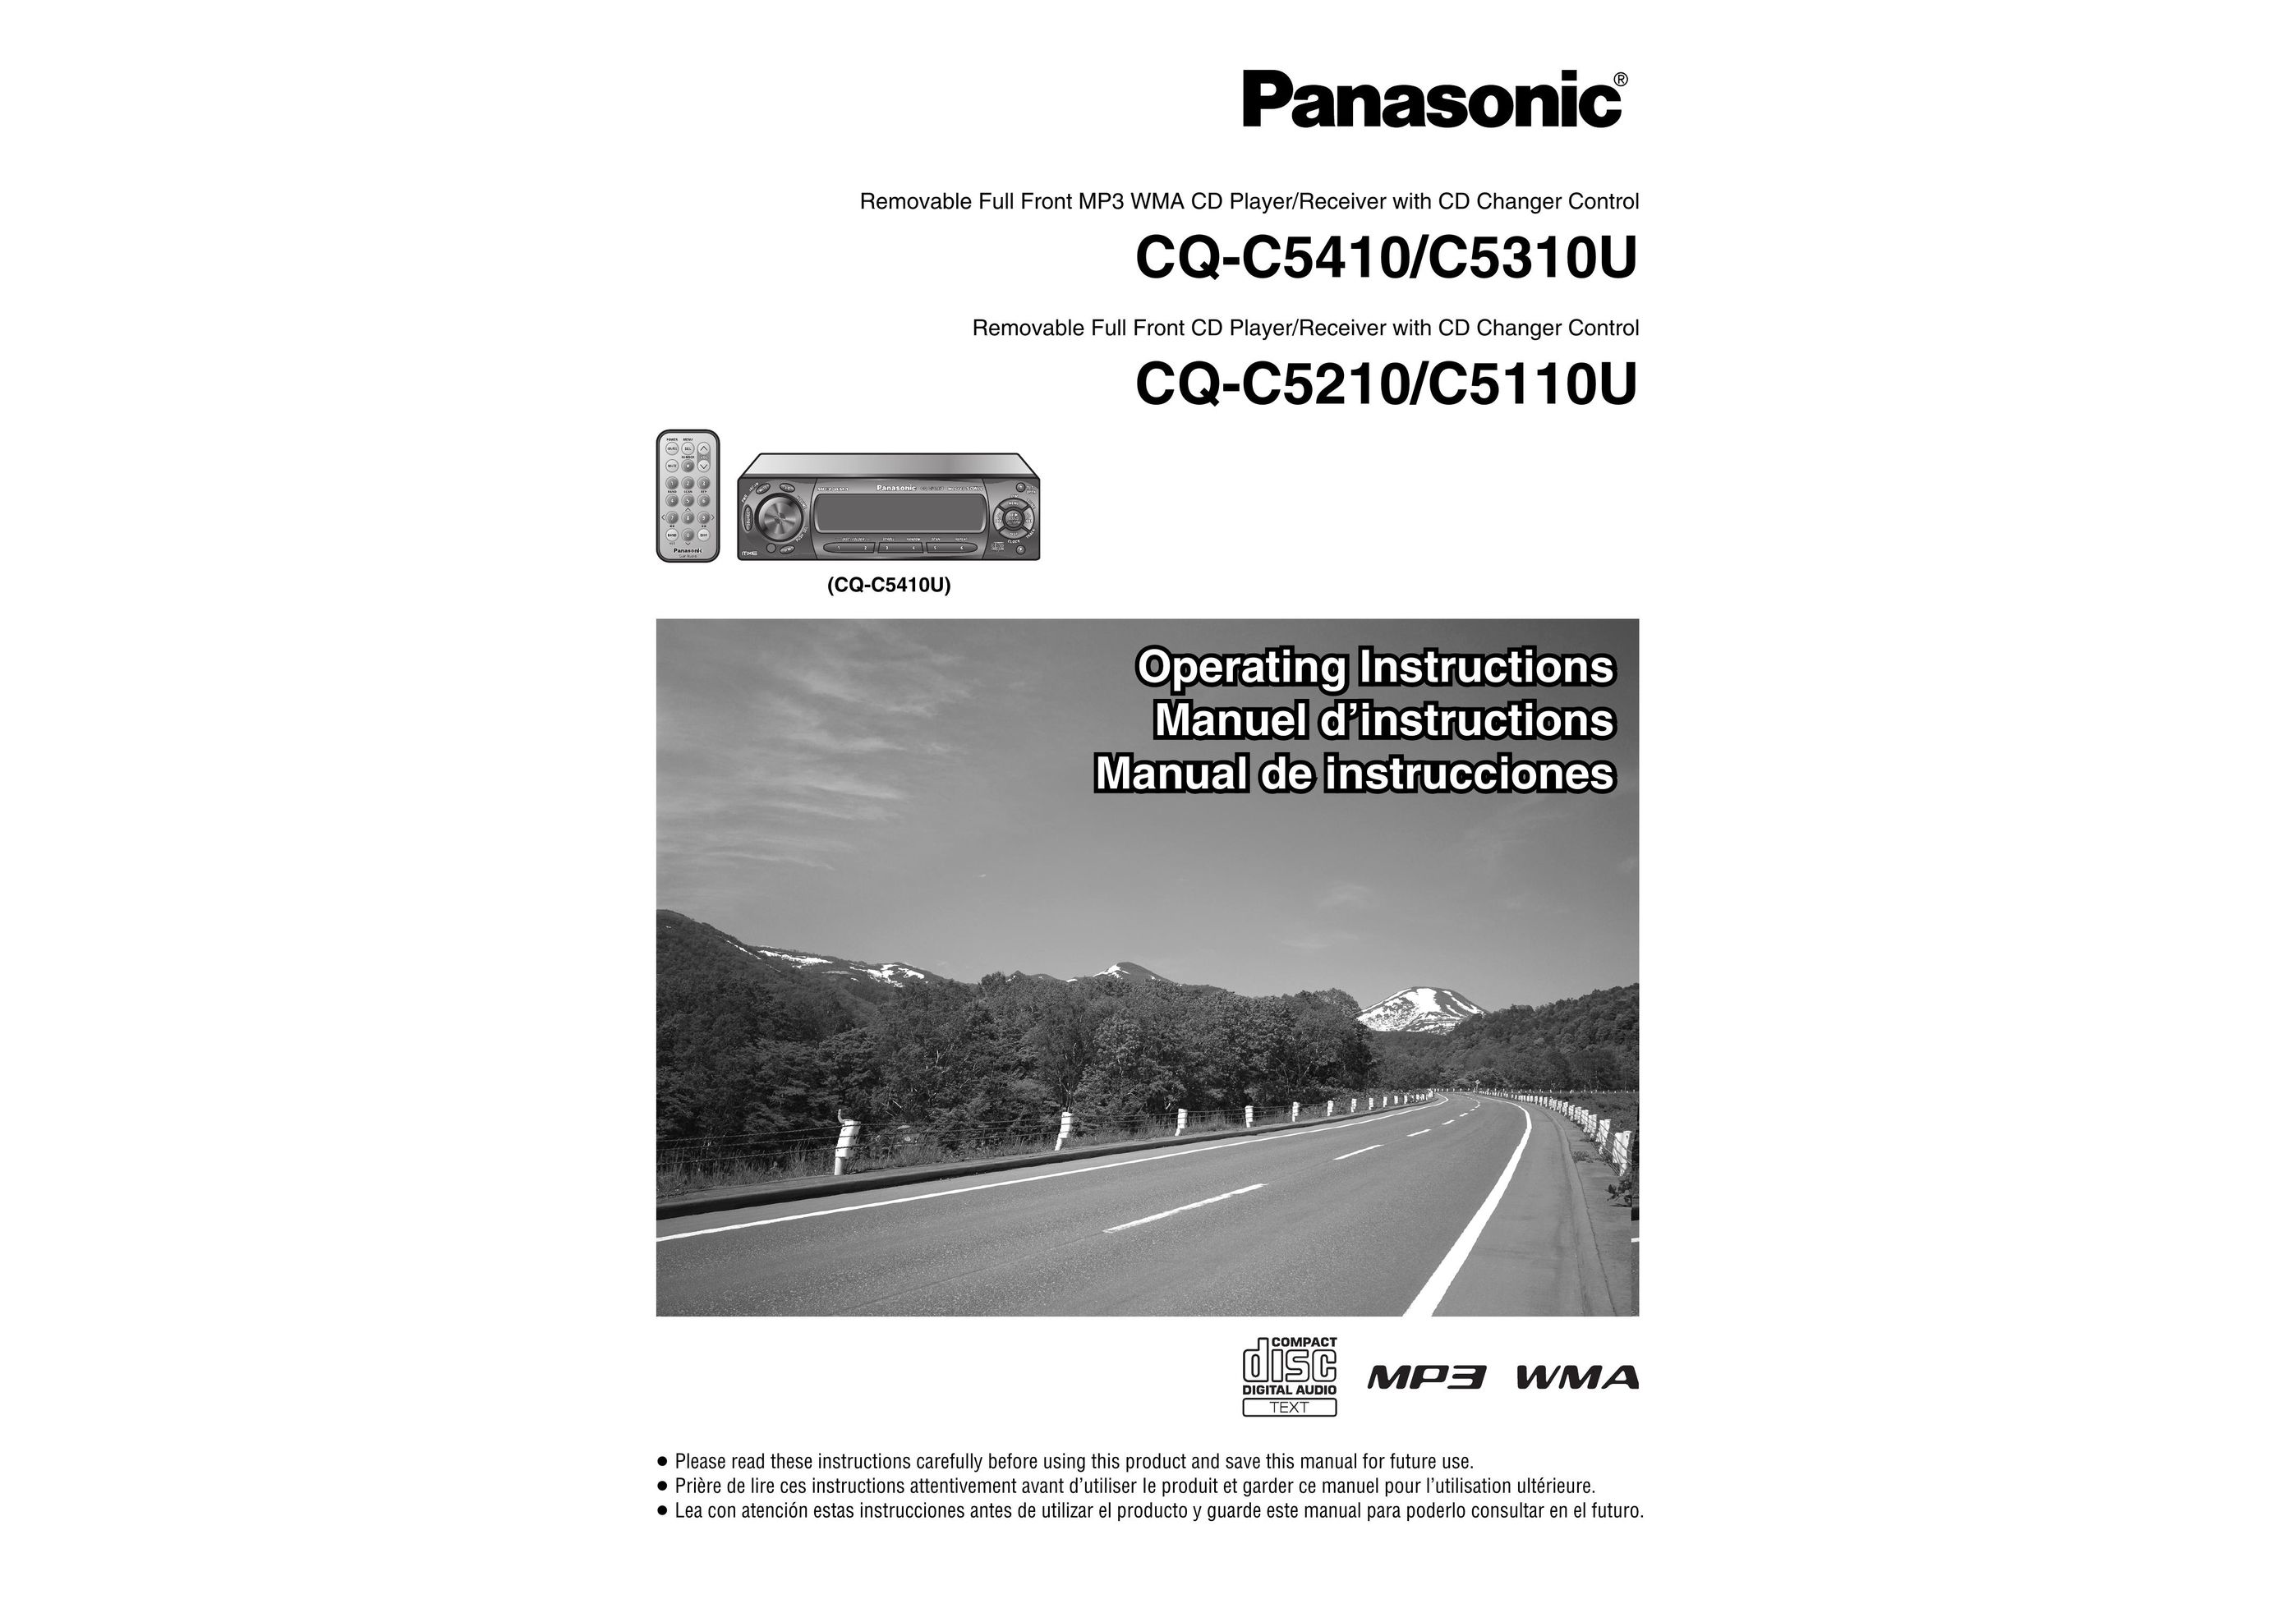 Panasonic C5410 CD Player User Manual